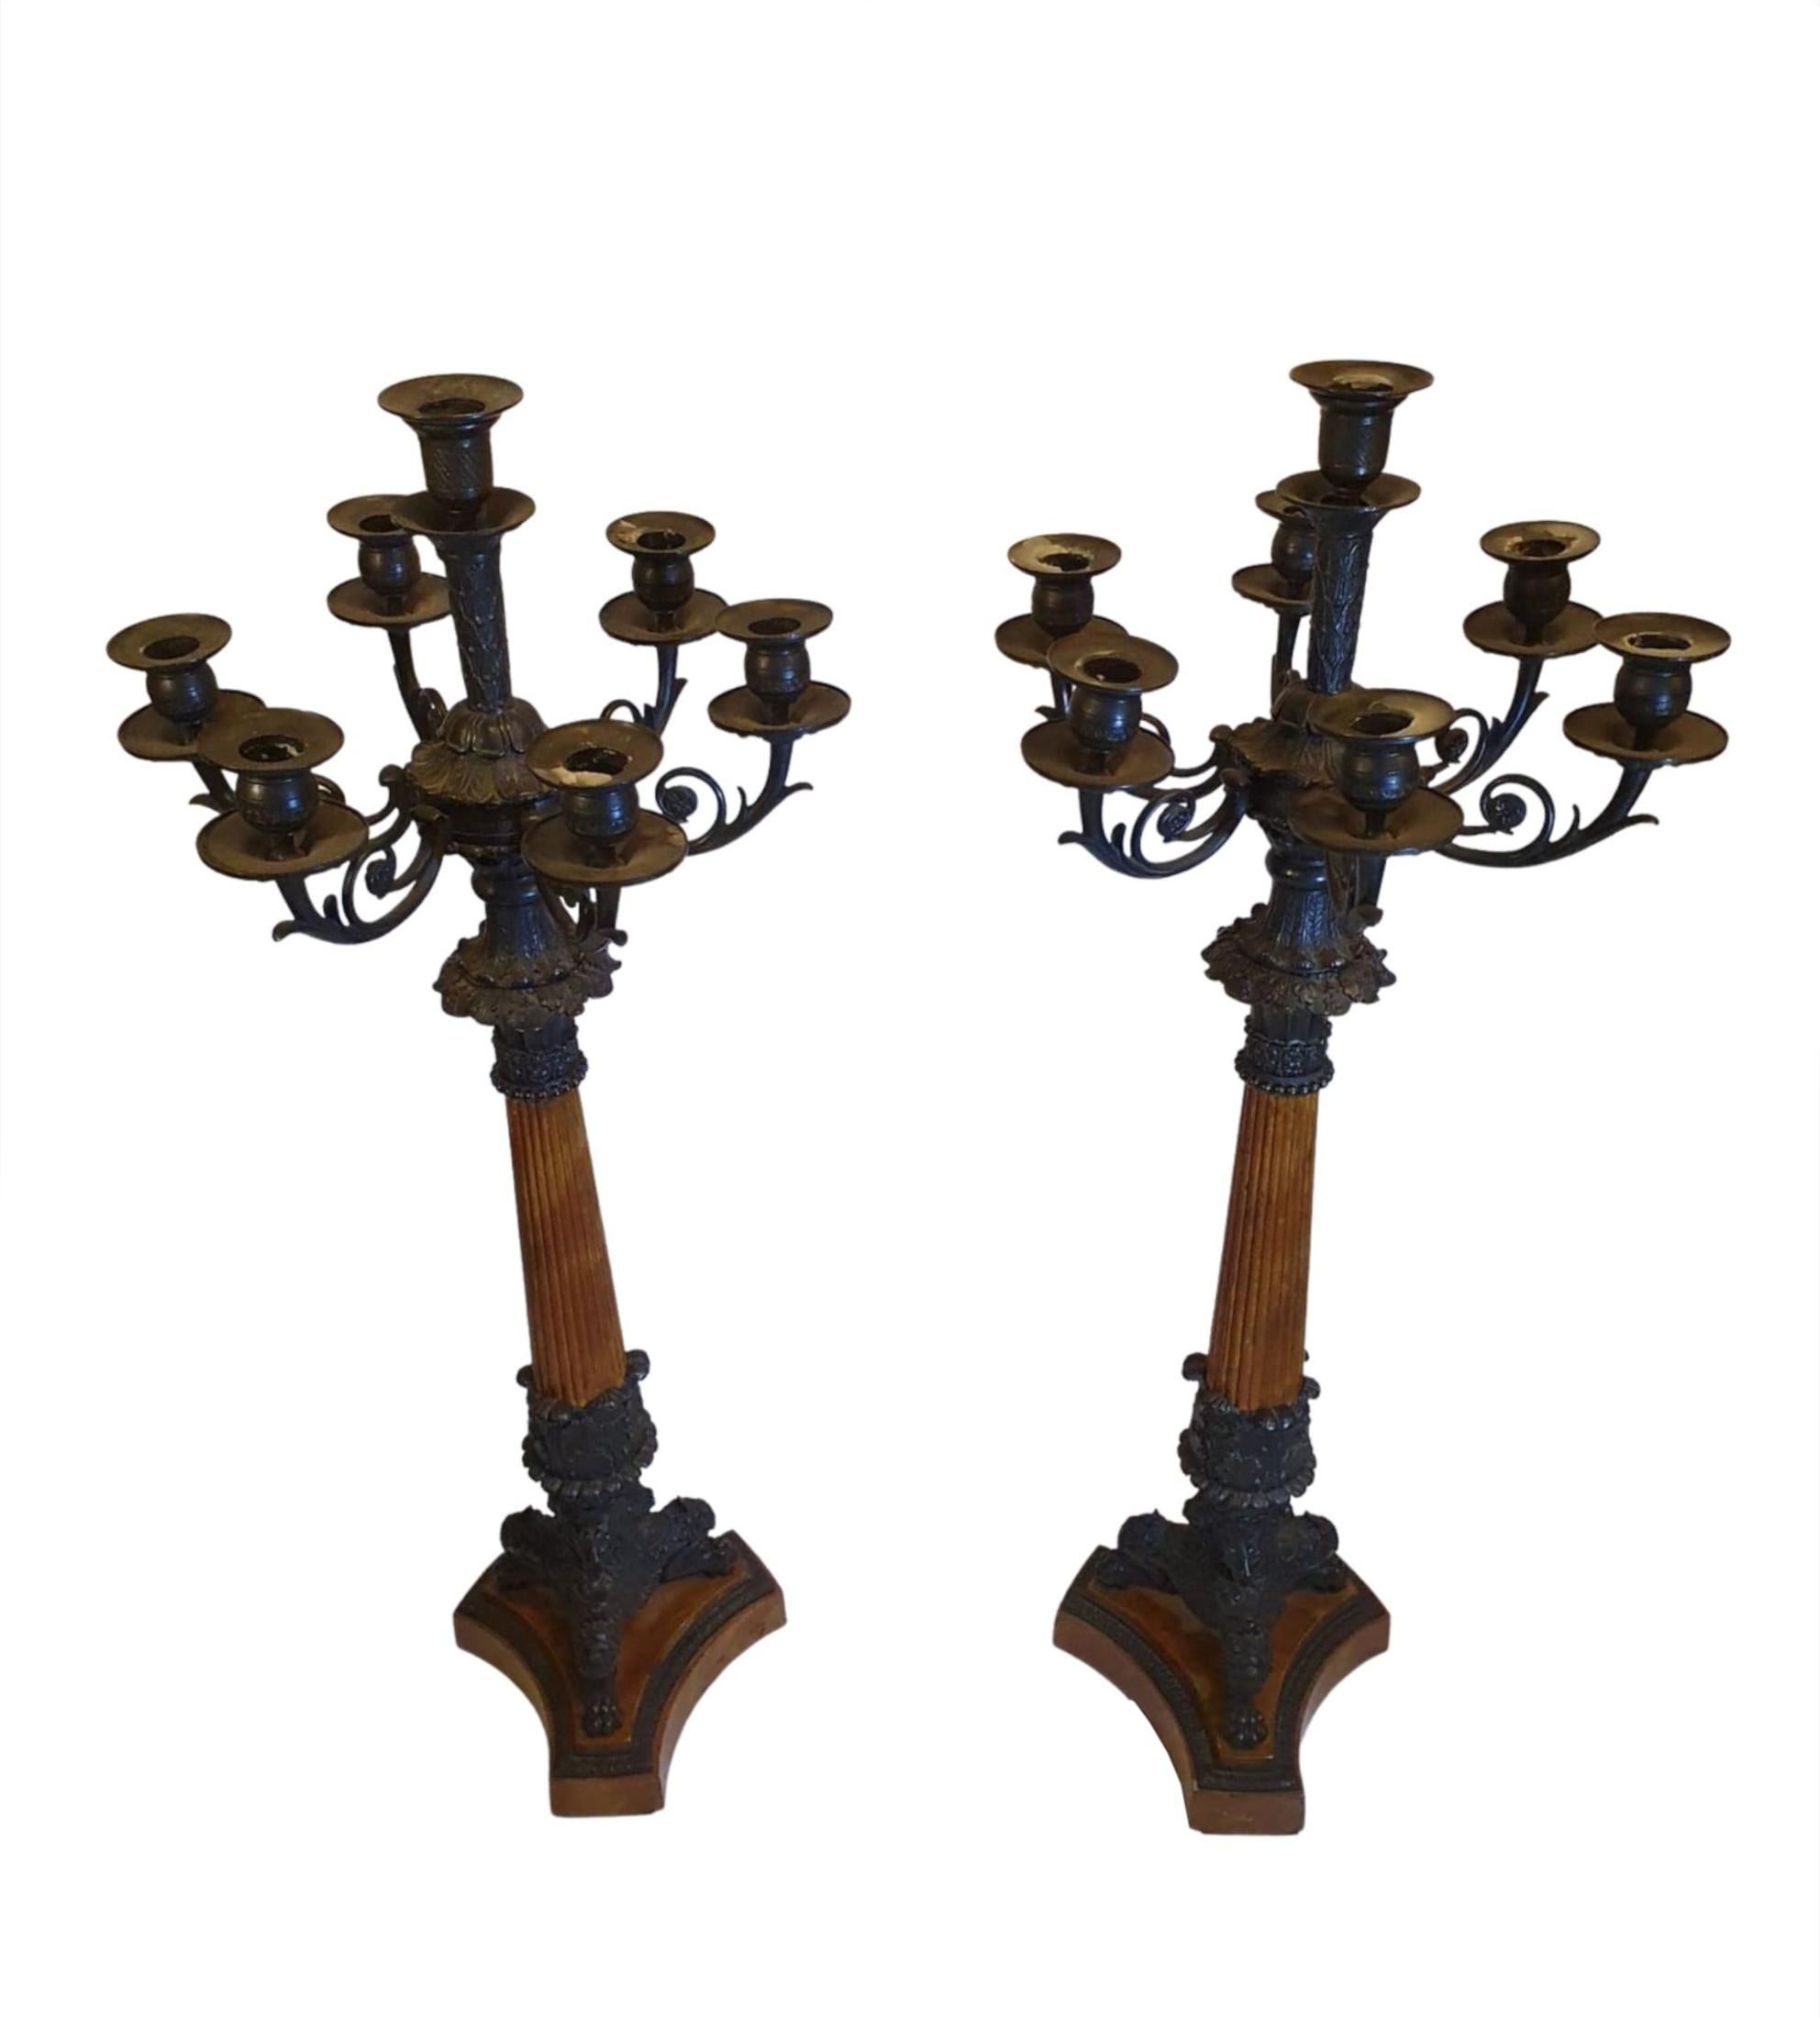 Une paire rare et raffinée de candélabres à sept branches en bronze du XIXe siècle de style Empire, avec des motifs complexes de volutes et de feuillages, avec une tige colonne cannelée soutenue par un pied triforme en forme de pattes, se terminant